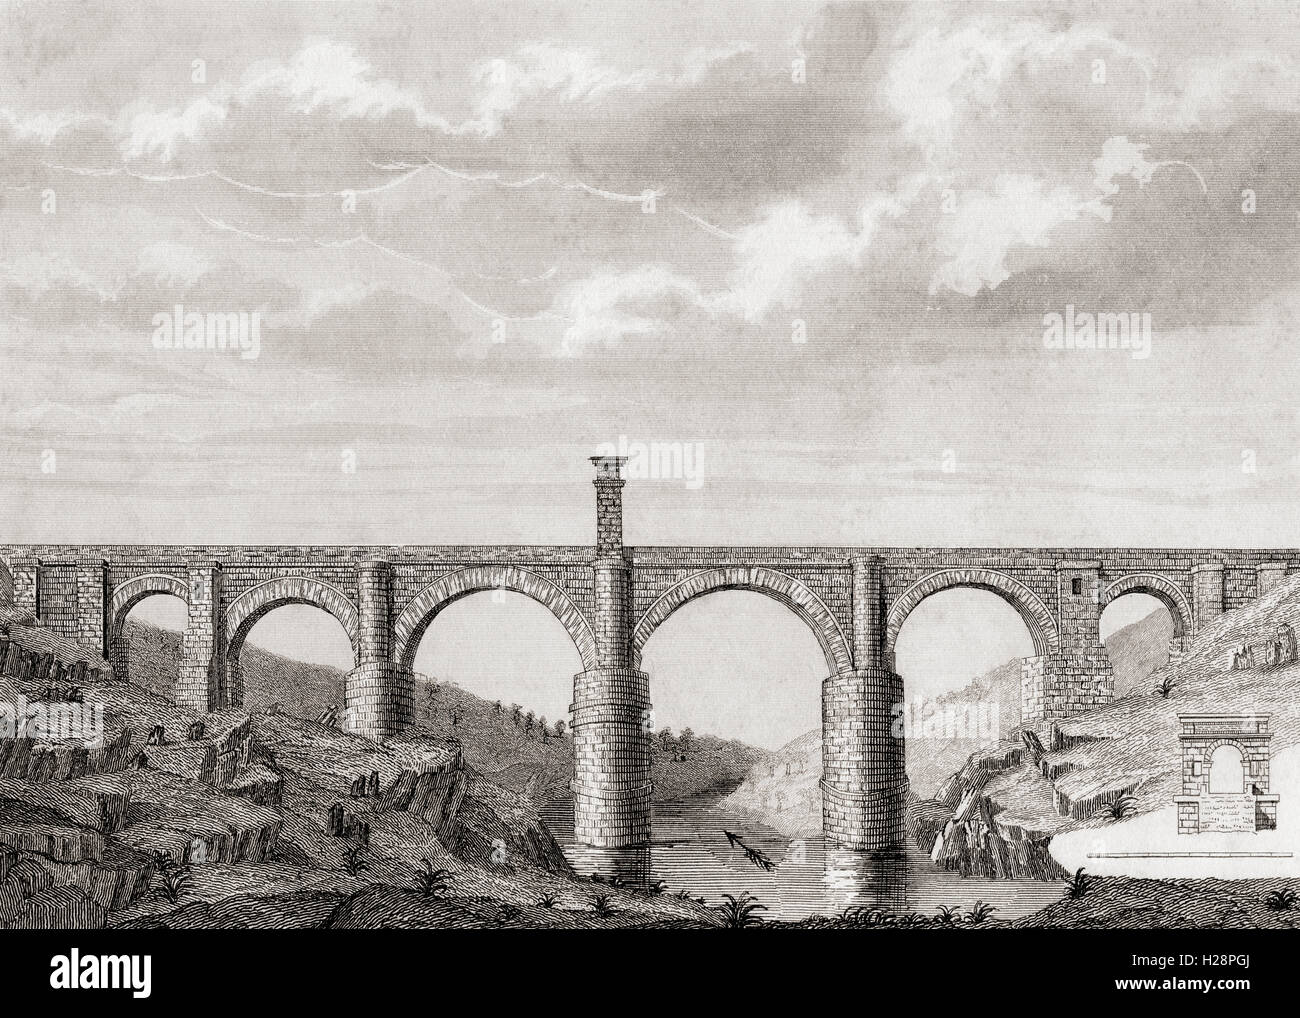 Die Alcántara Brücke, aka Trajans Brücke von Alcantara, Spanien.  2. Jahrhundert römische Stein Bogen Brücke über den Tejo bei Alcántara, Spanien. Stockfoto